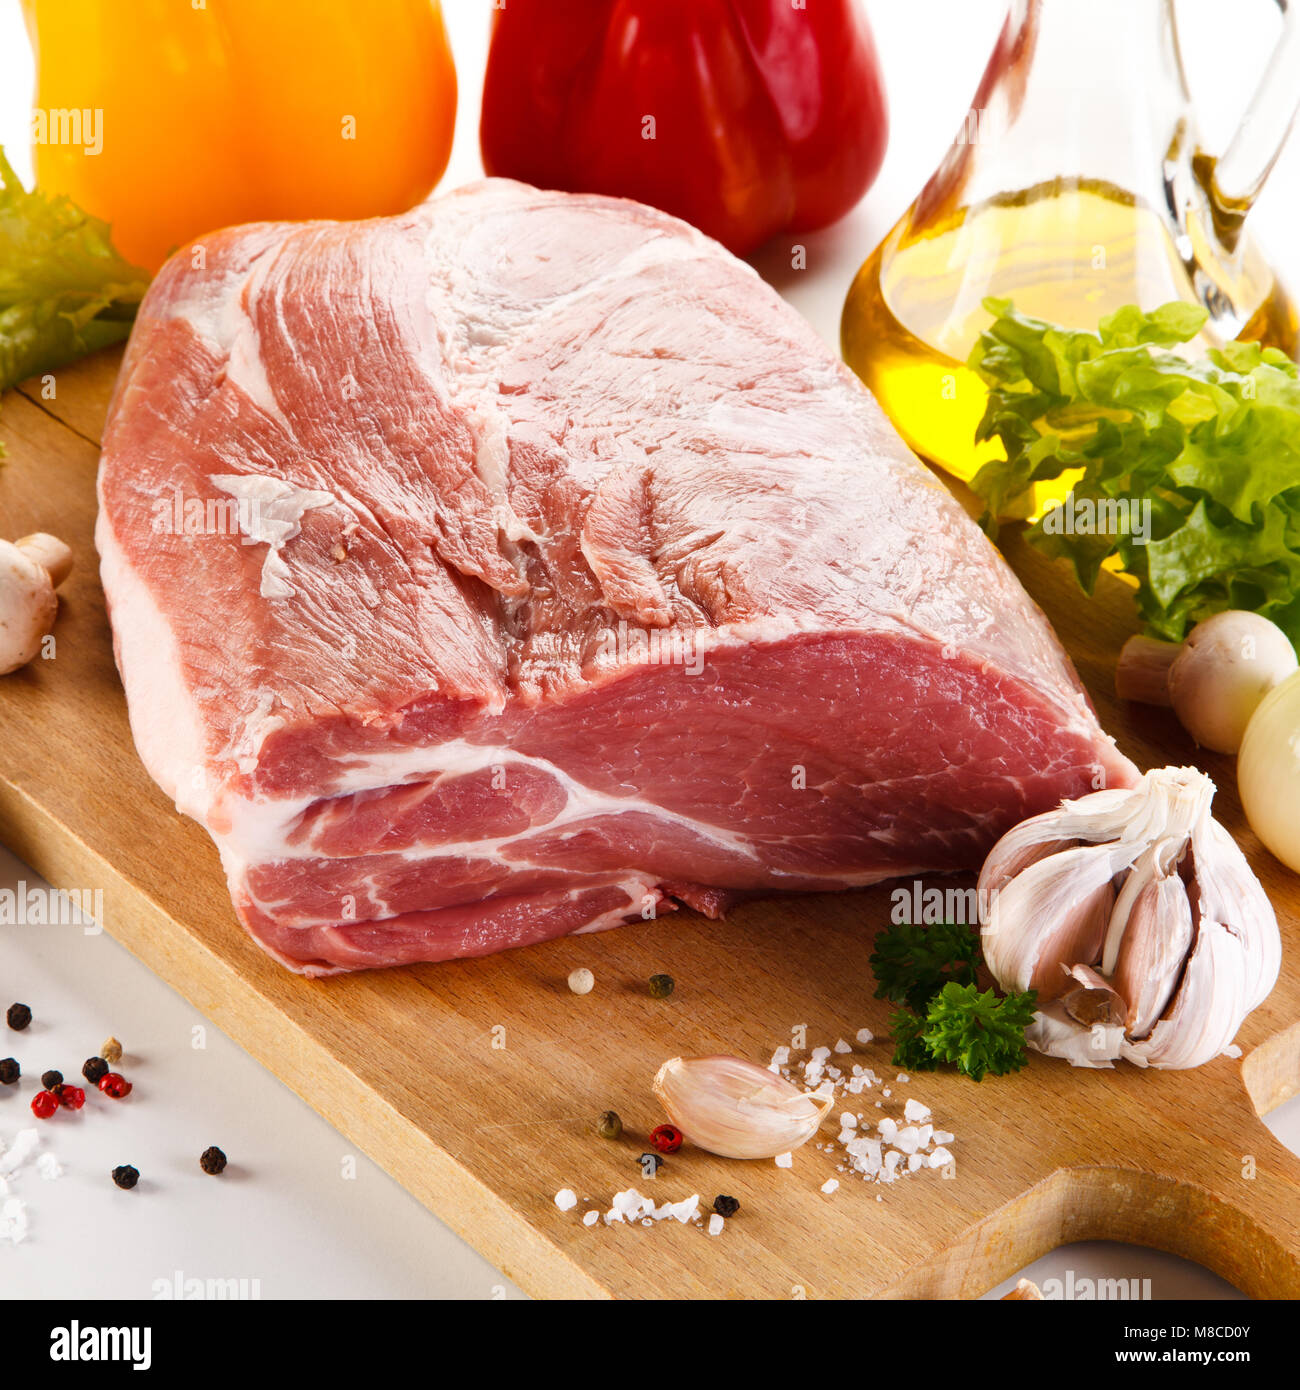 Raw pork on cutting board Stock Photo